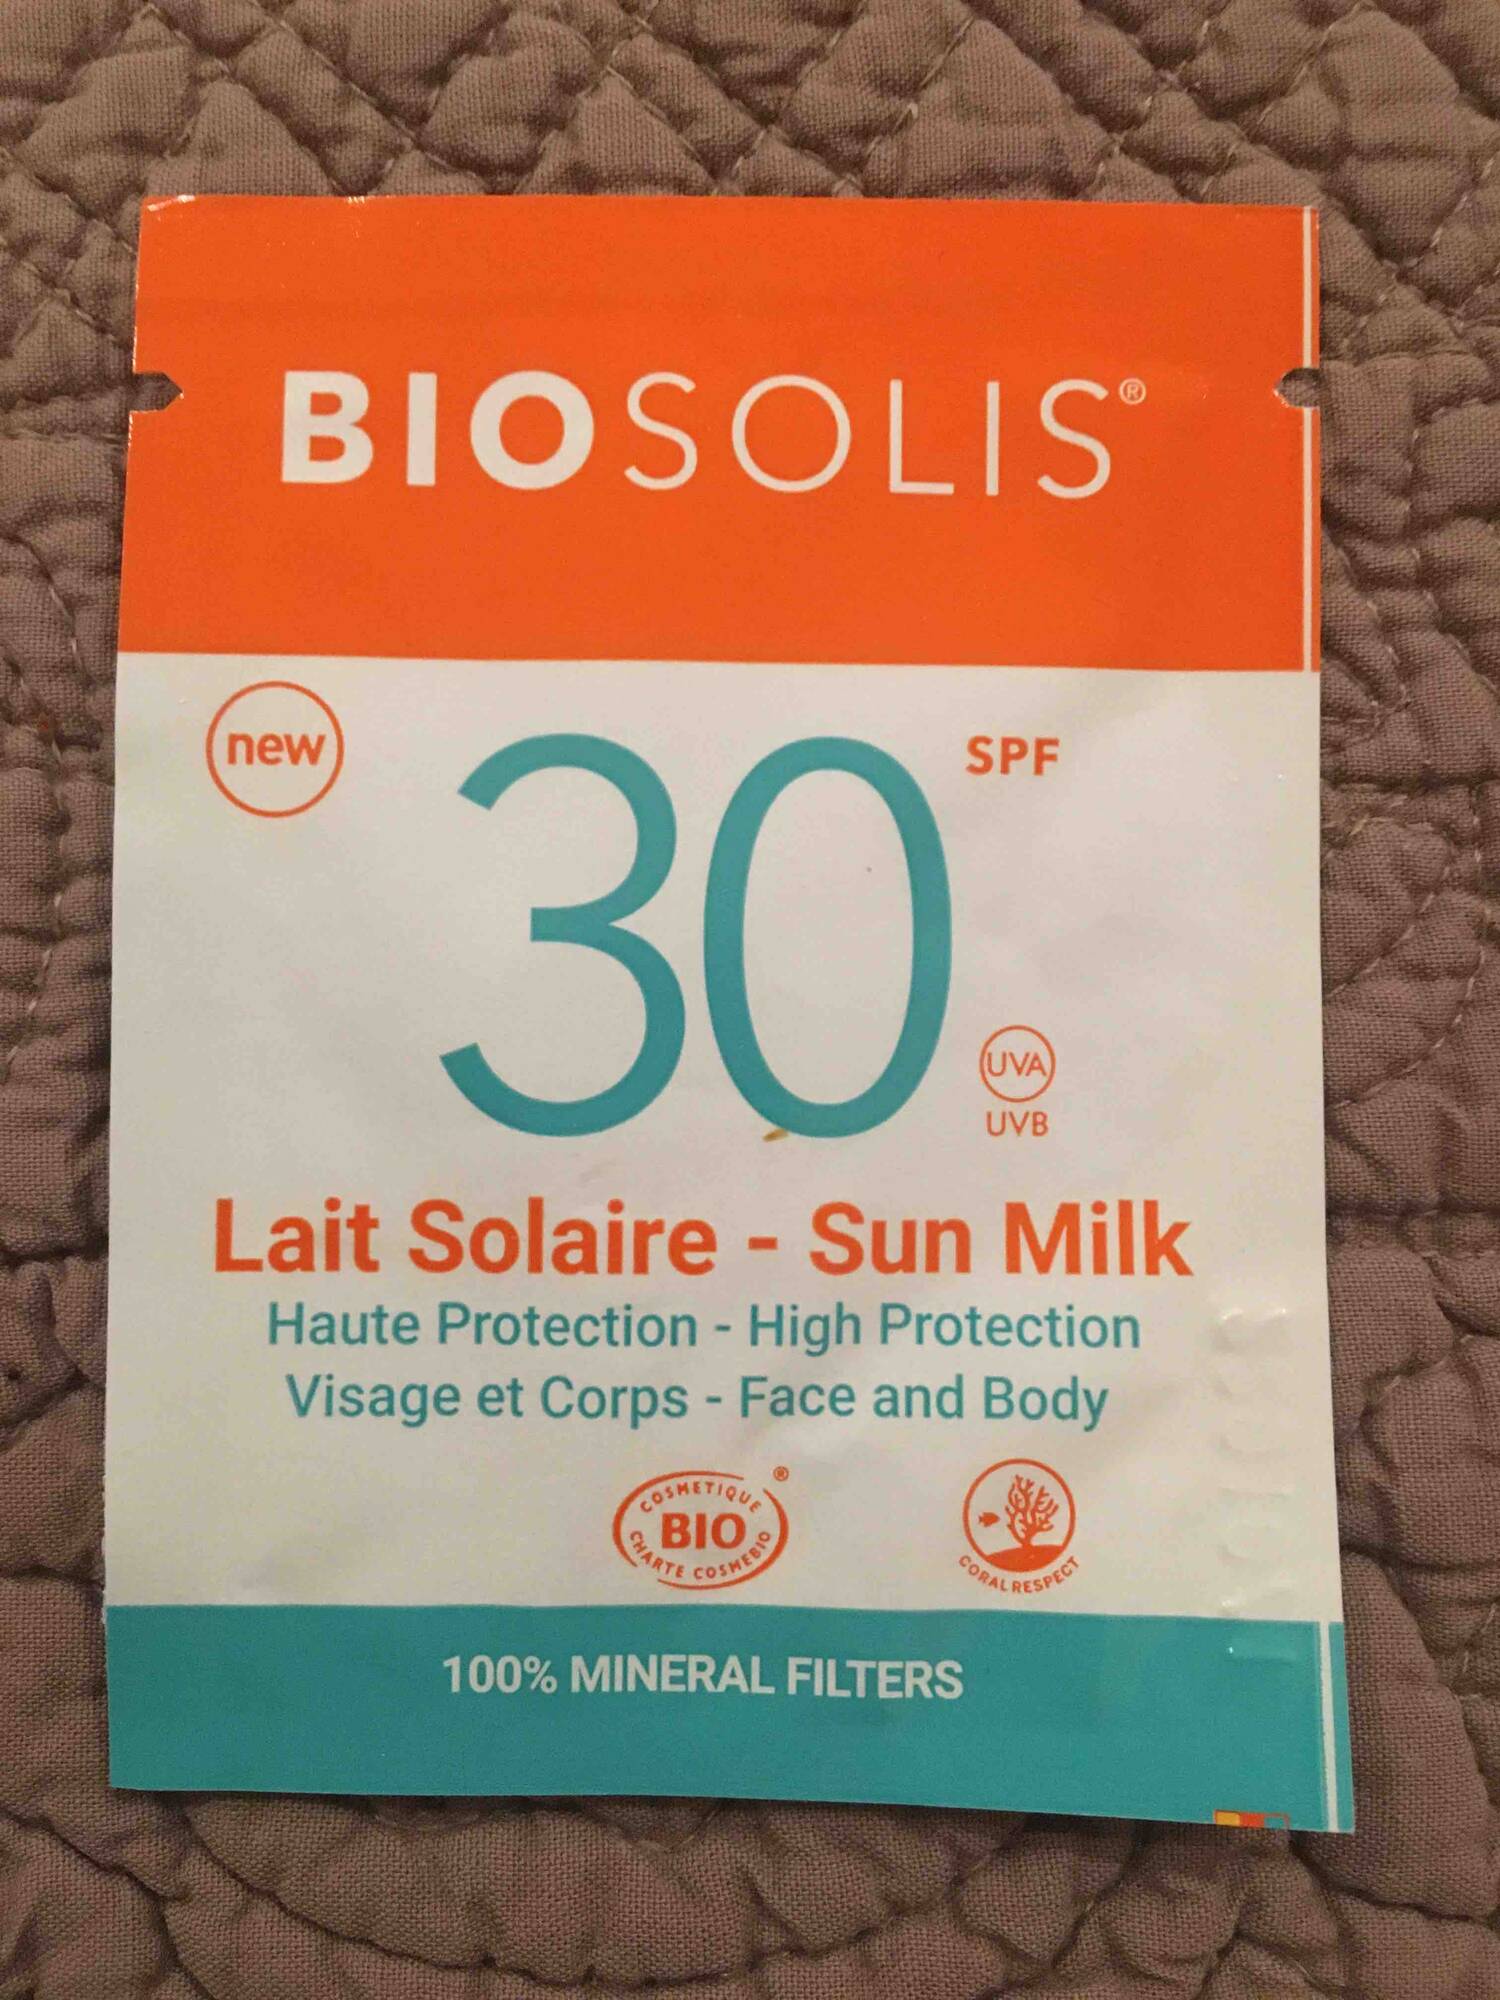 BIOSOLIS - Lait solaire SPF 30